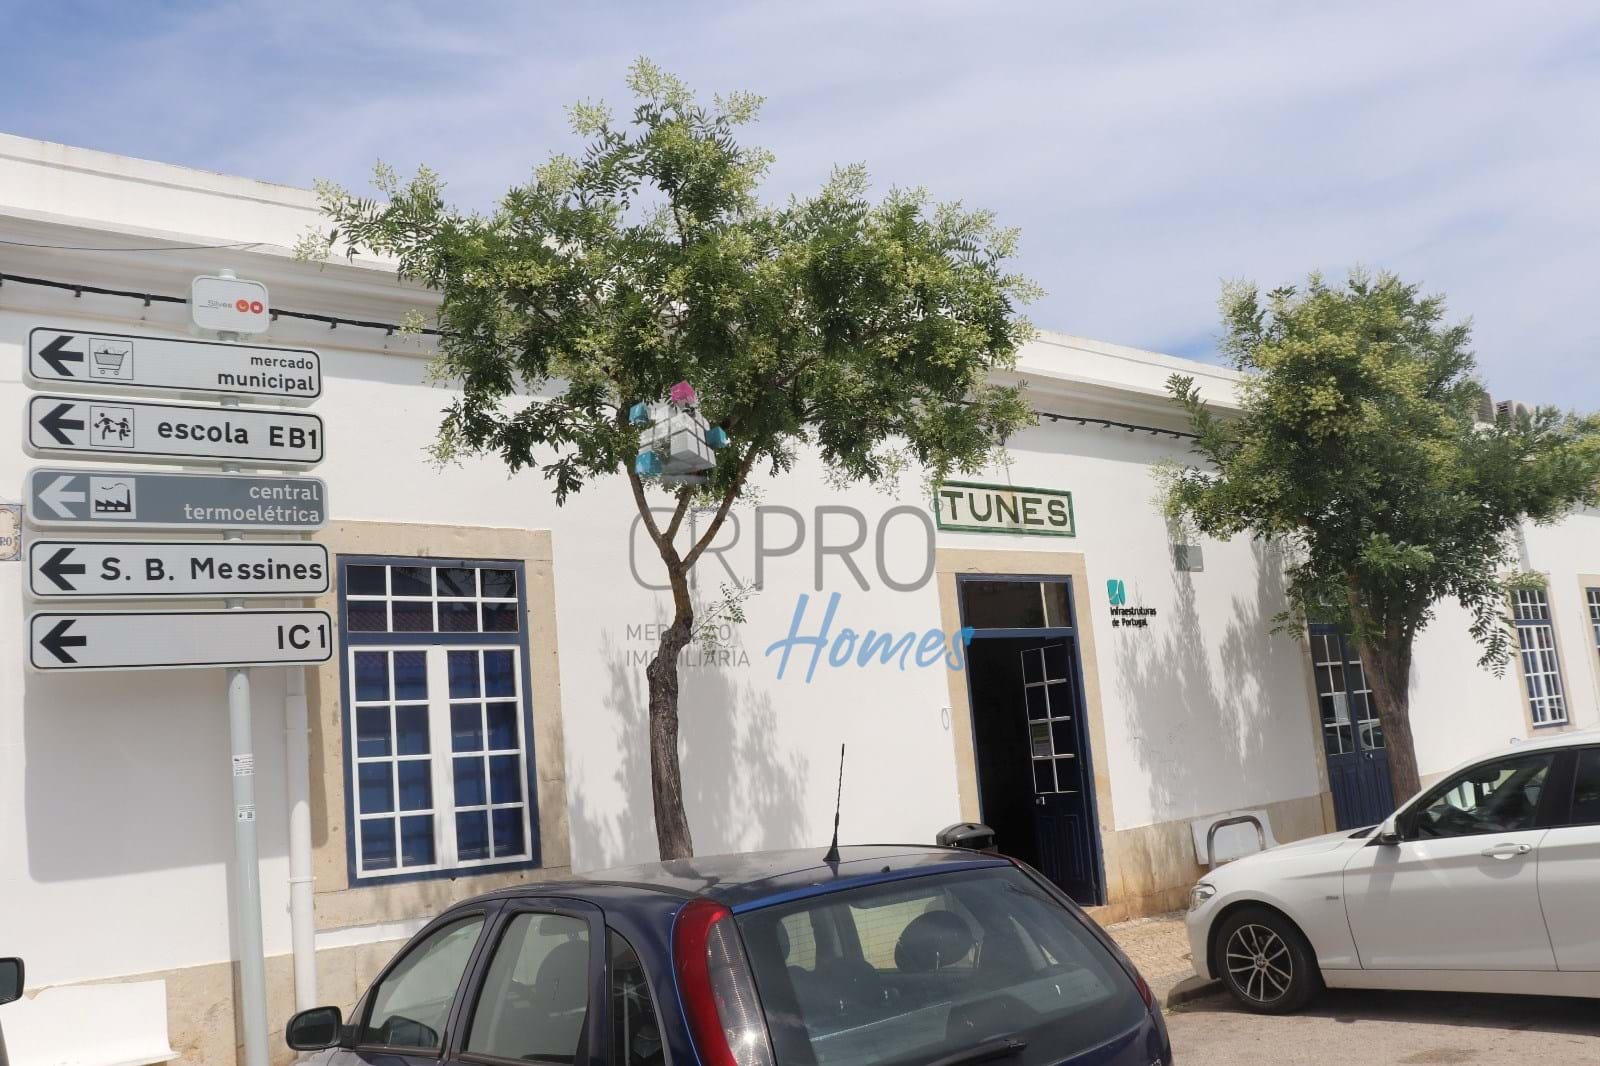 Maison individuelle de 3 chambres  à Algarve